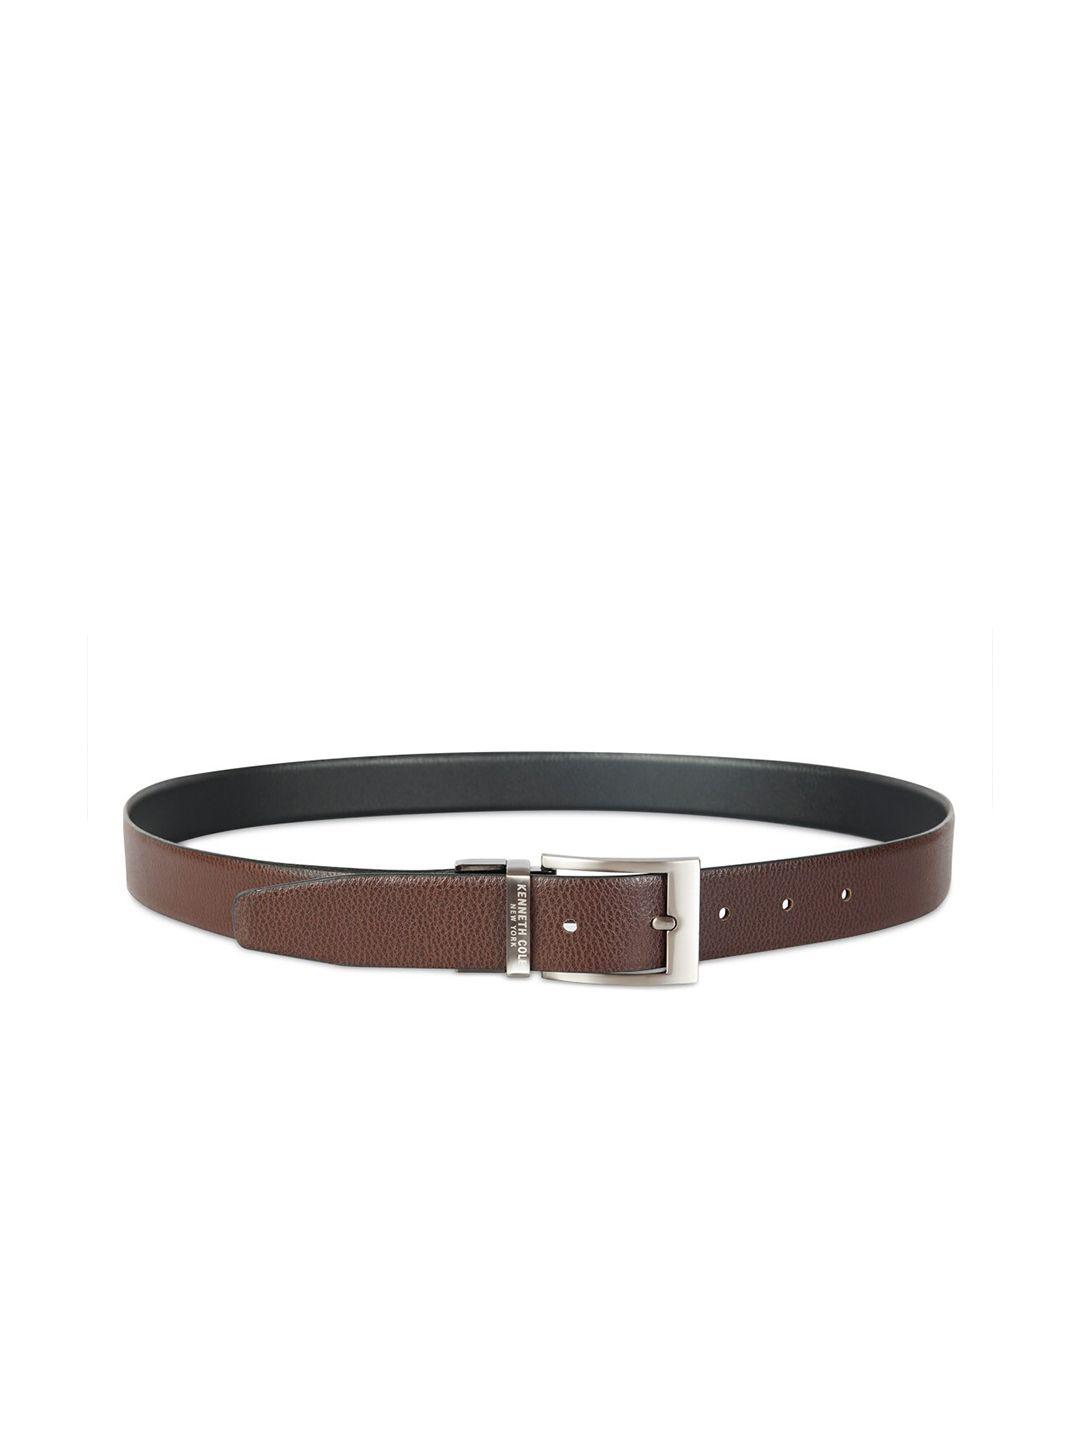 kenneth-cole-men-brown-leather-belt